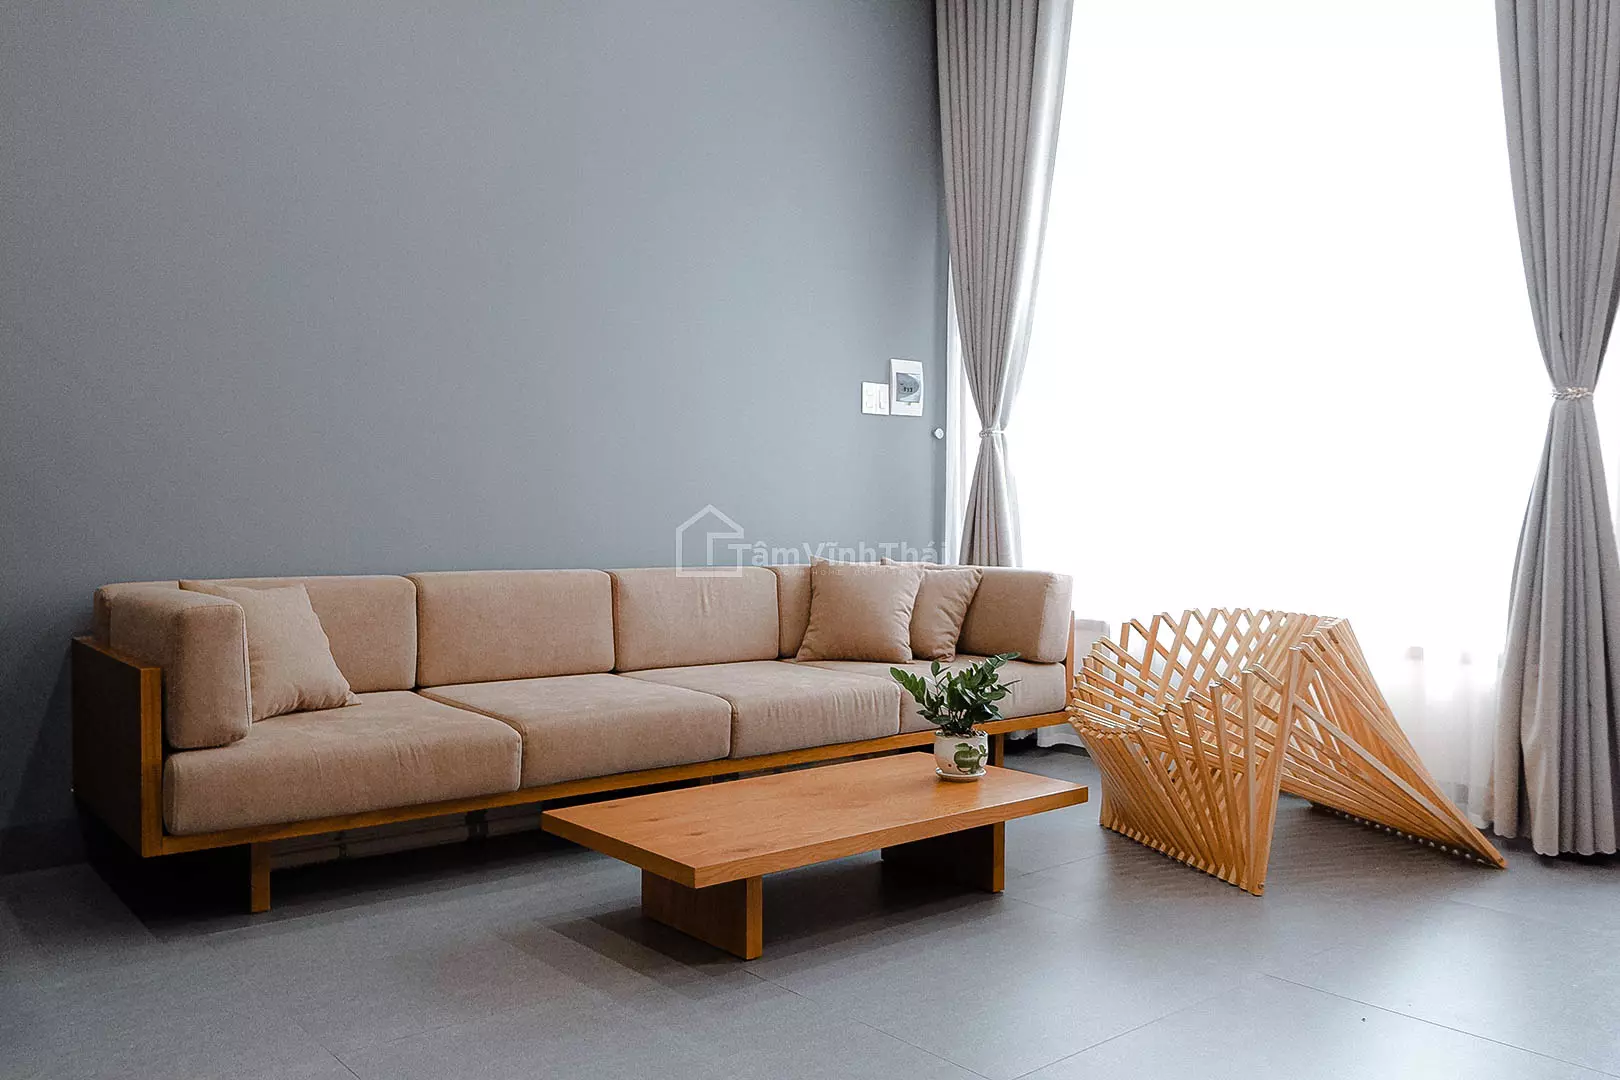 Sofa văng gỗ Michela, khung gỗ tự nhiên - Tâm Vĩnh Thái